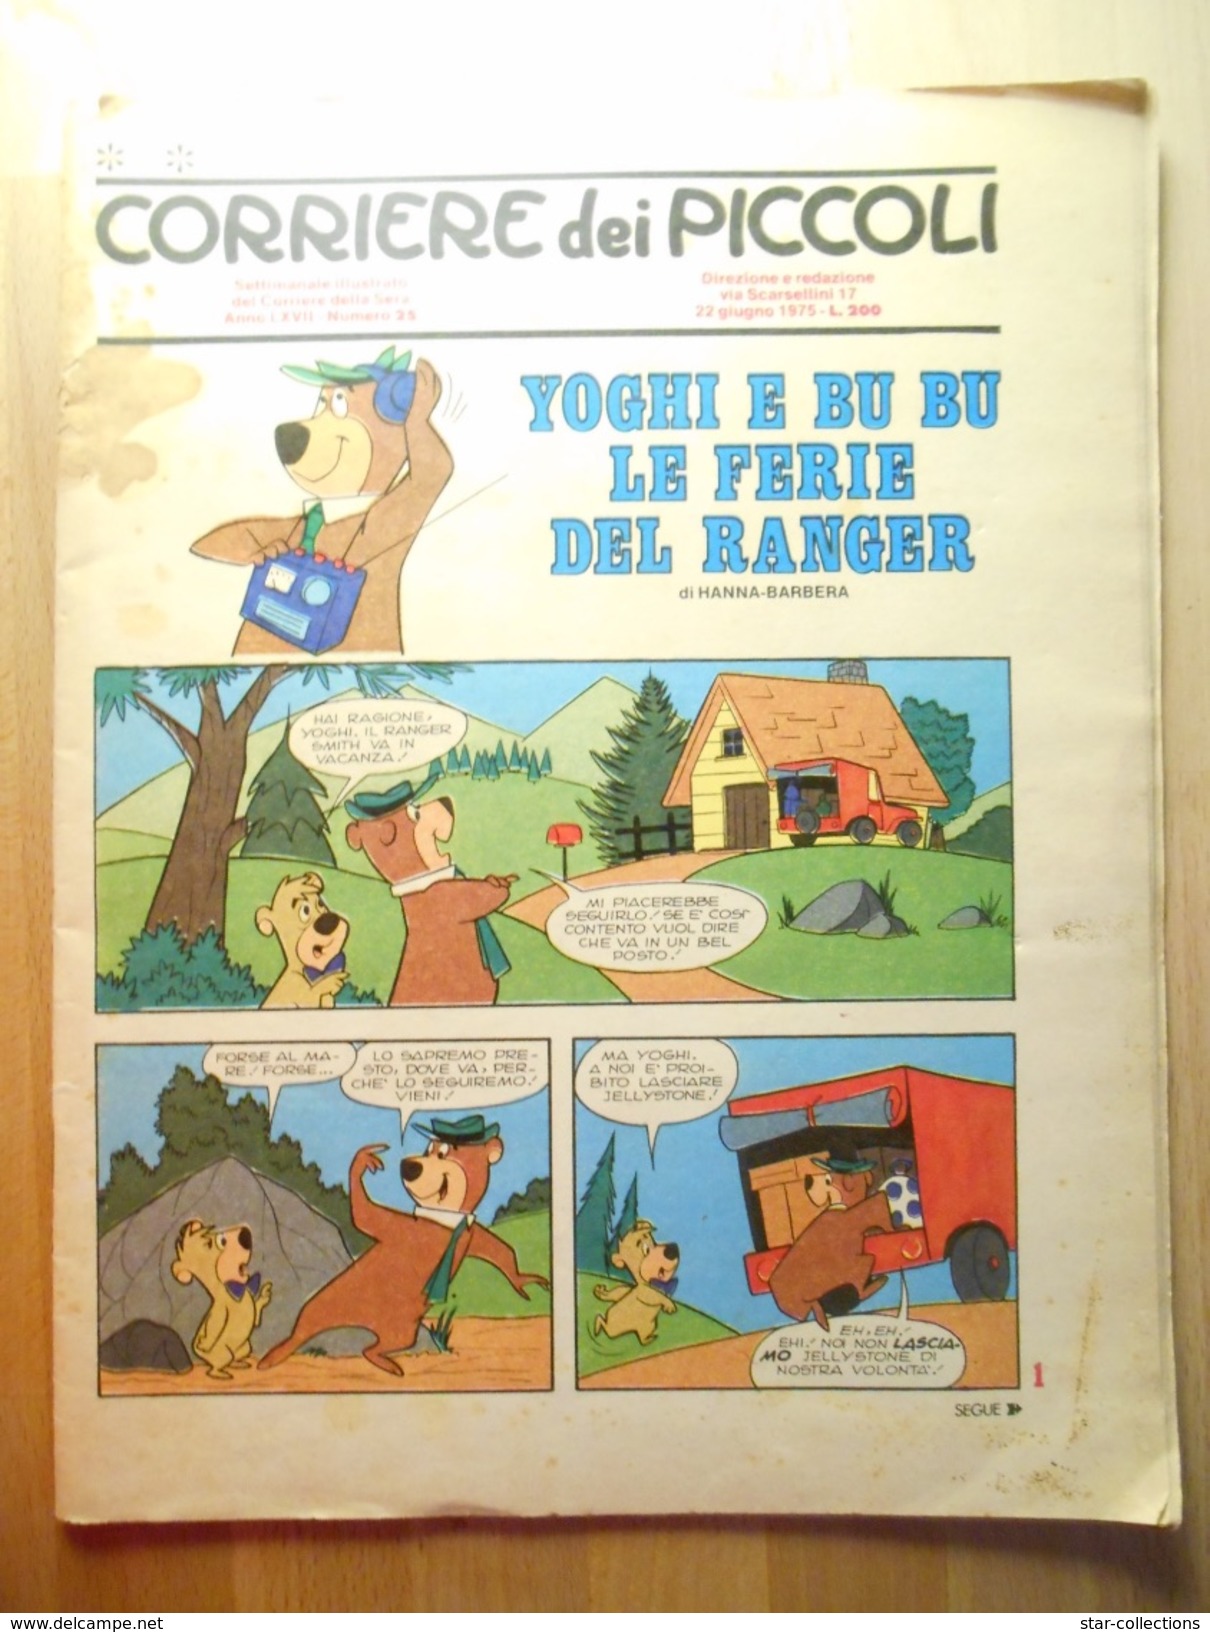 CORRIERE DEI PICCOLI N. 25 1975 - Corriere Dei Piccoli